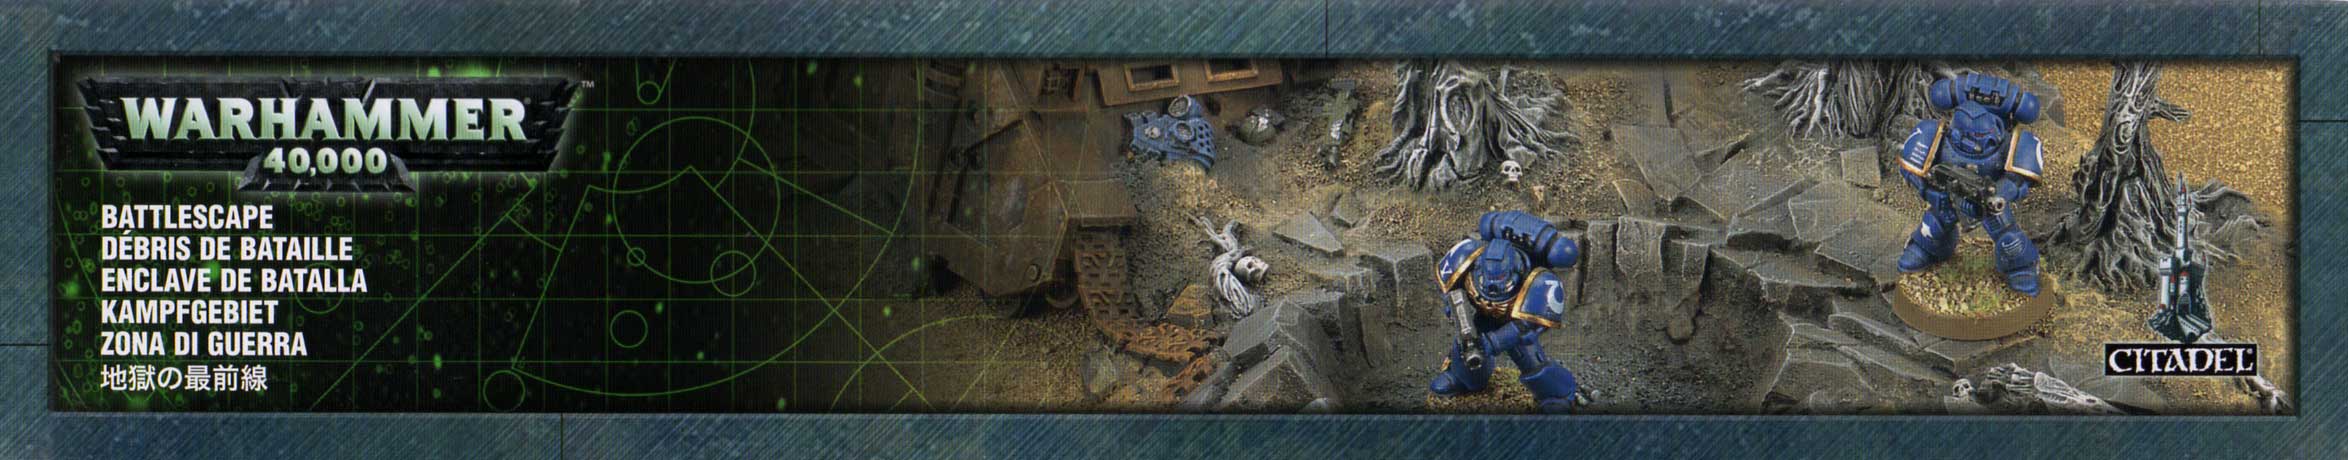 Packaging droite de l'épave de Rhino et débris de batailles (décor Warhammer 40.000)